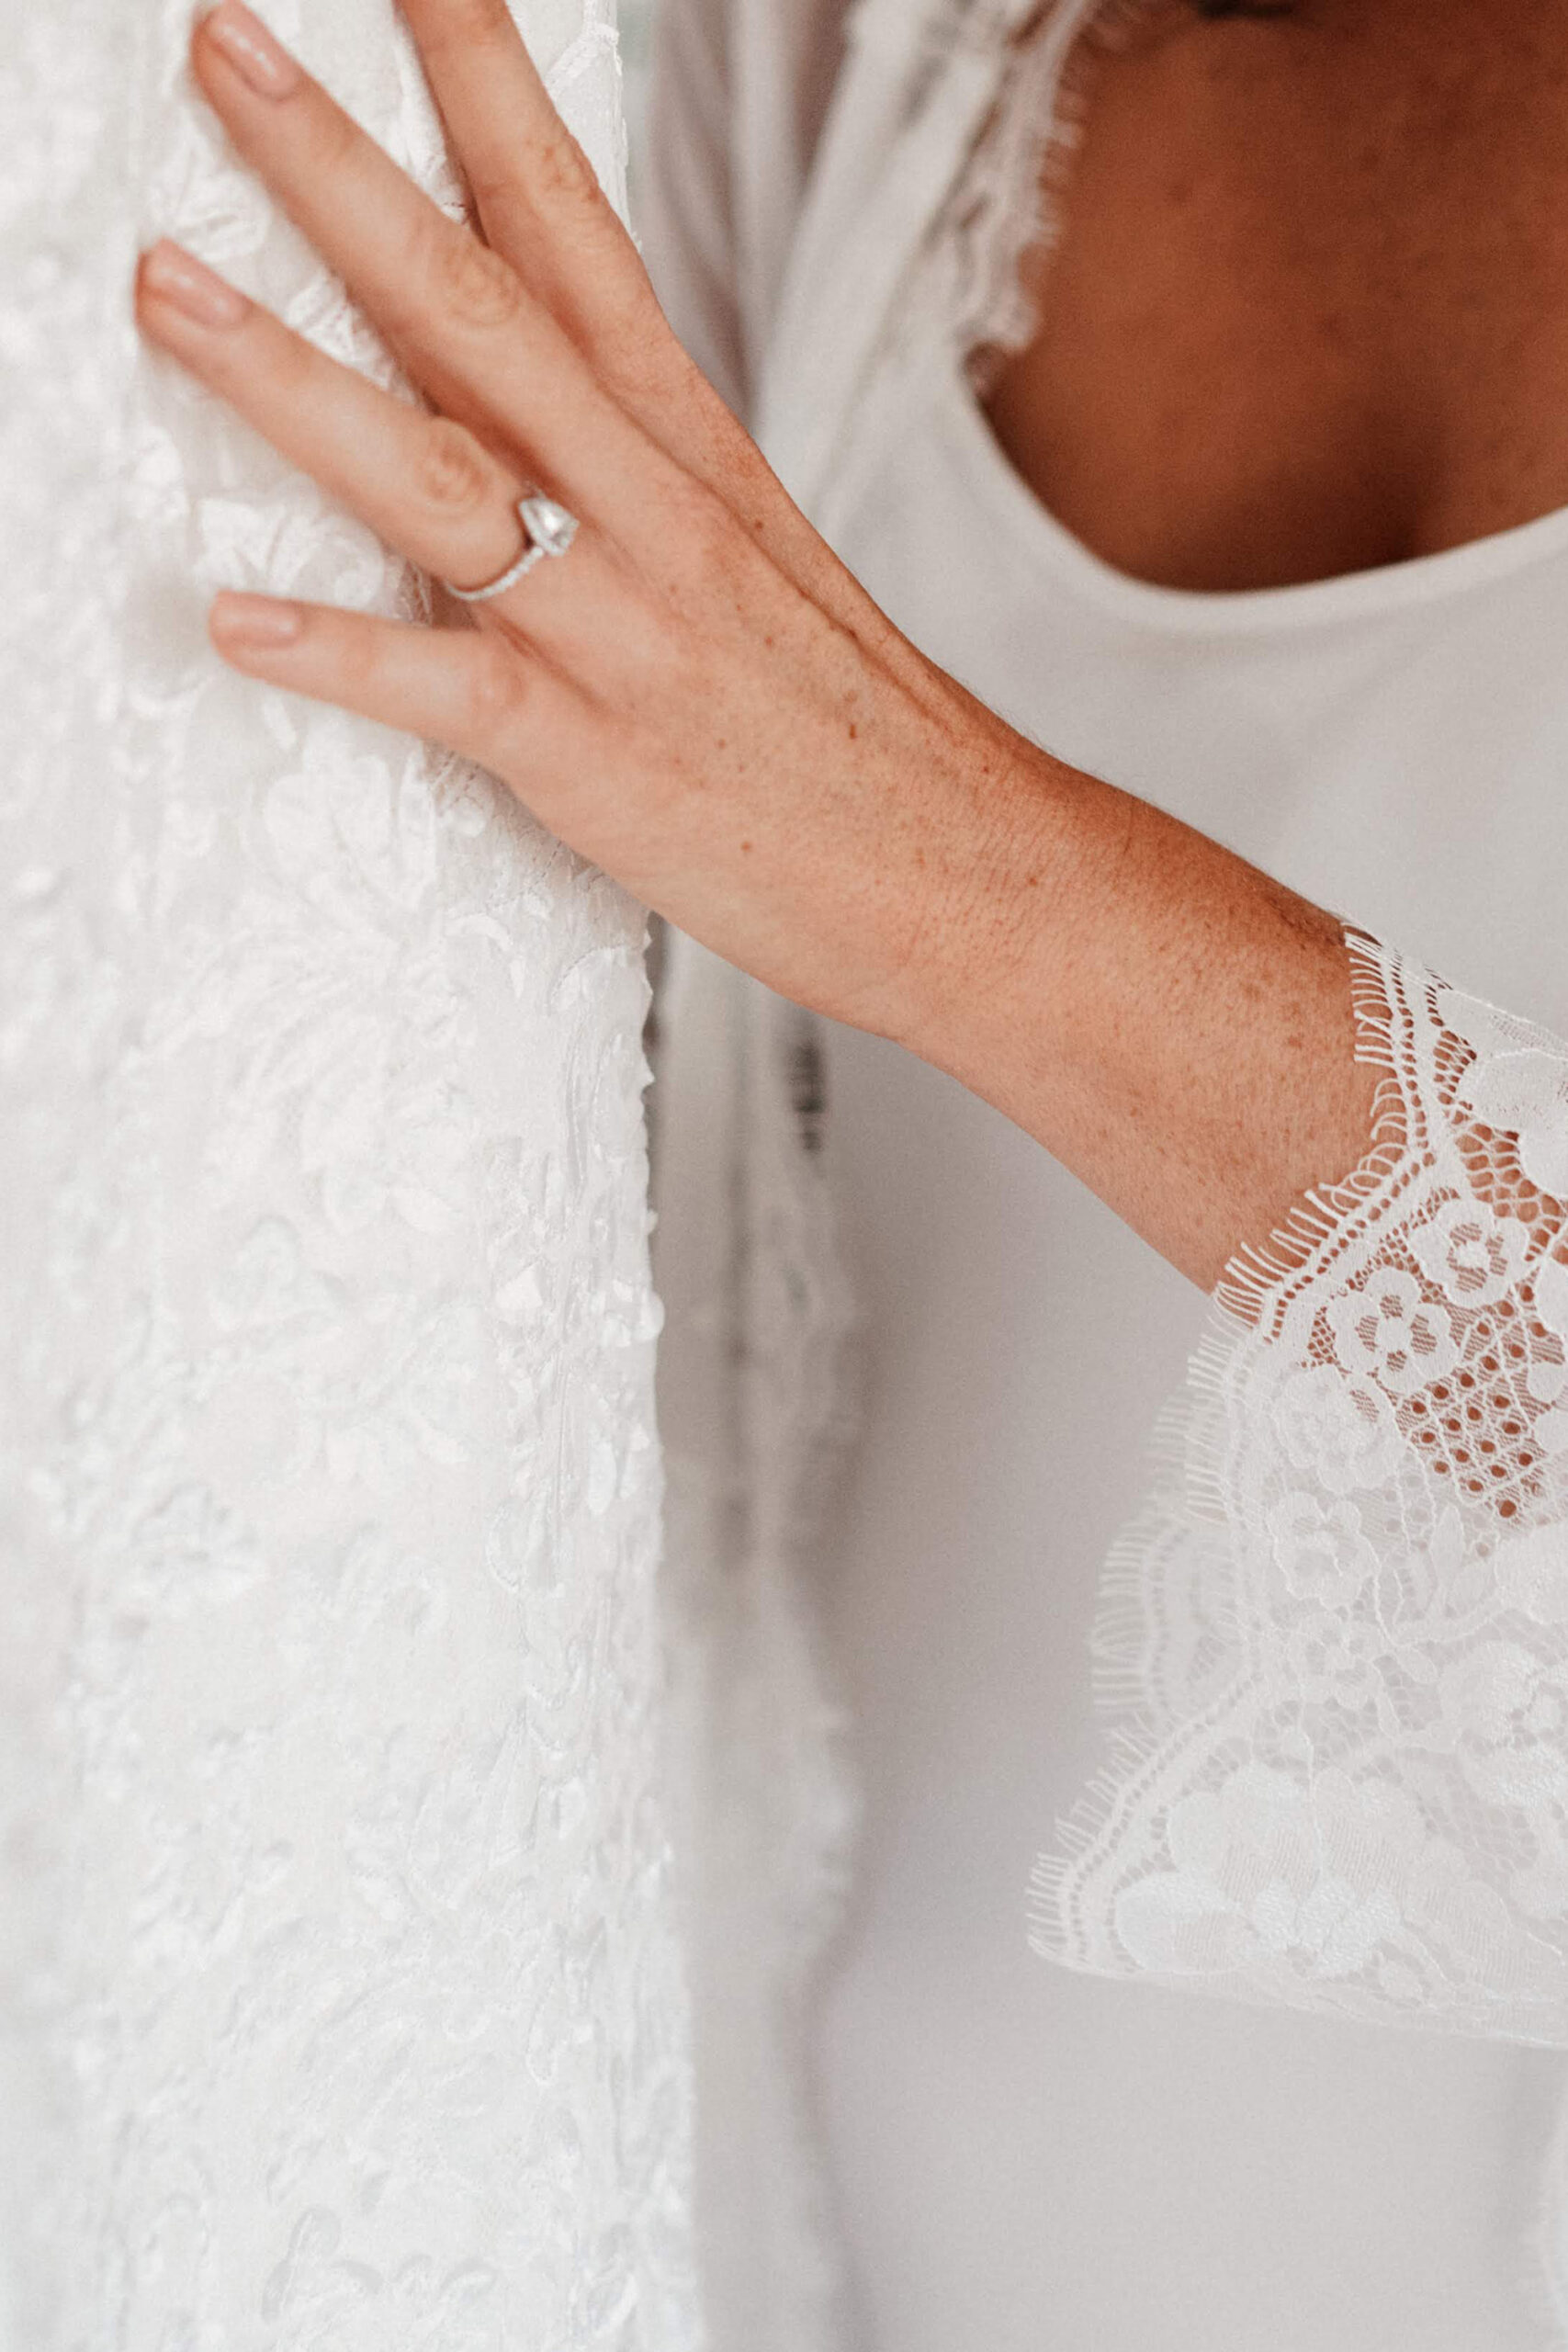 Larissa Anthony Elegant Wedding Luke Middlemiss SBS 007 scaled